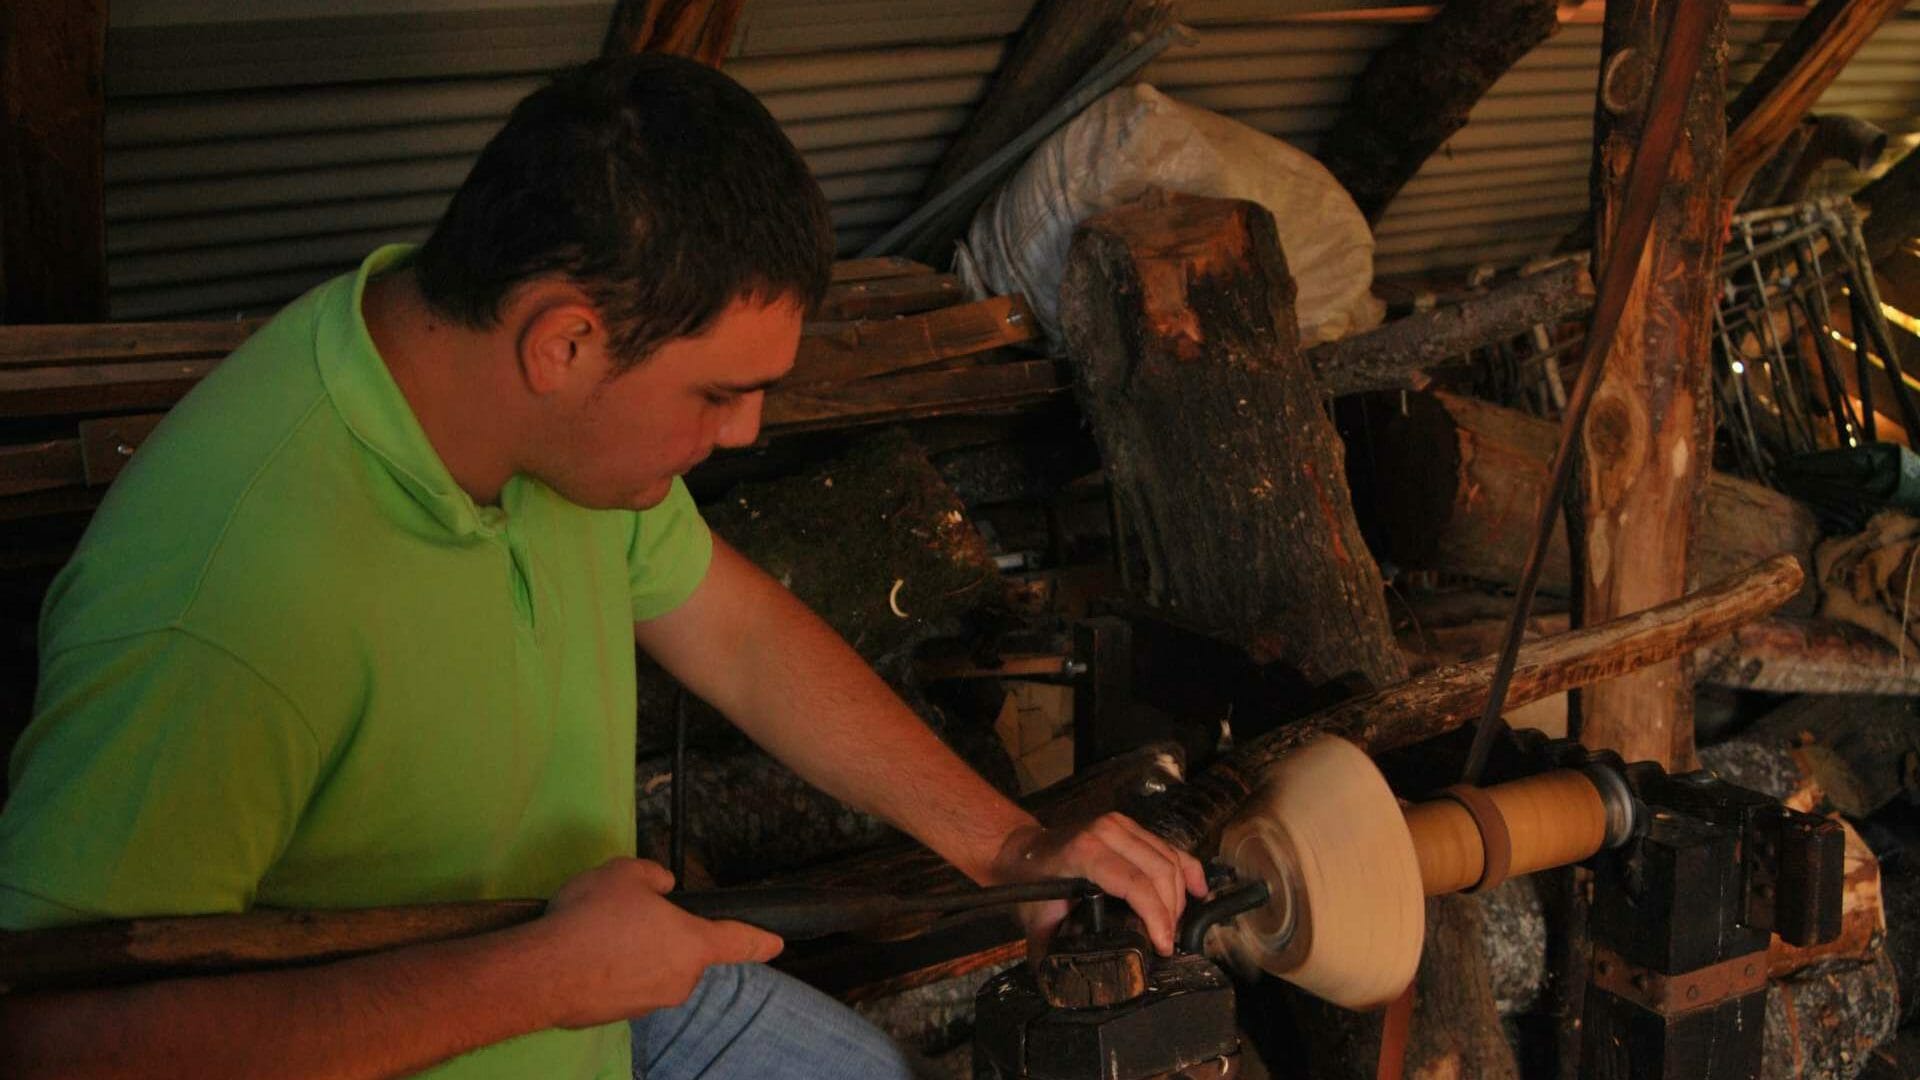 El trabajo del cunqueiro, un oficio artesano de la madera para hacer todo tipo de enseres. Foto © Quei Vitorino.